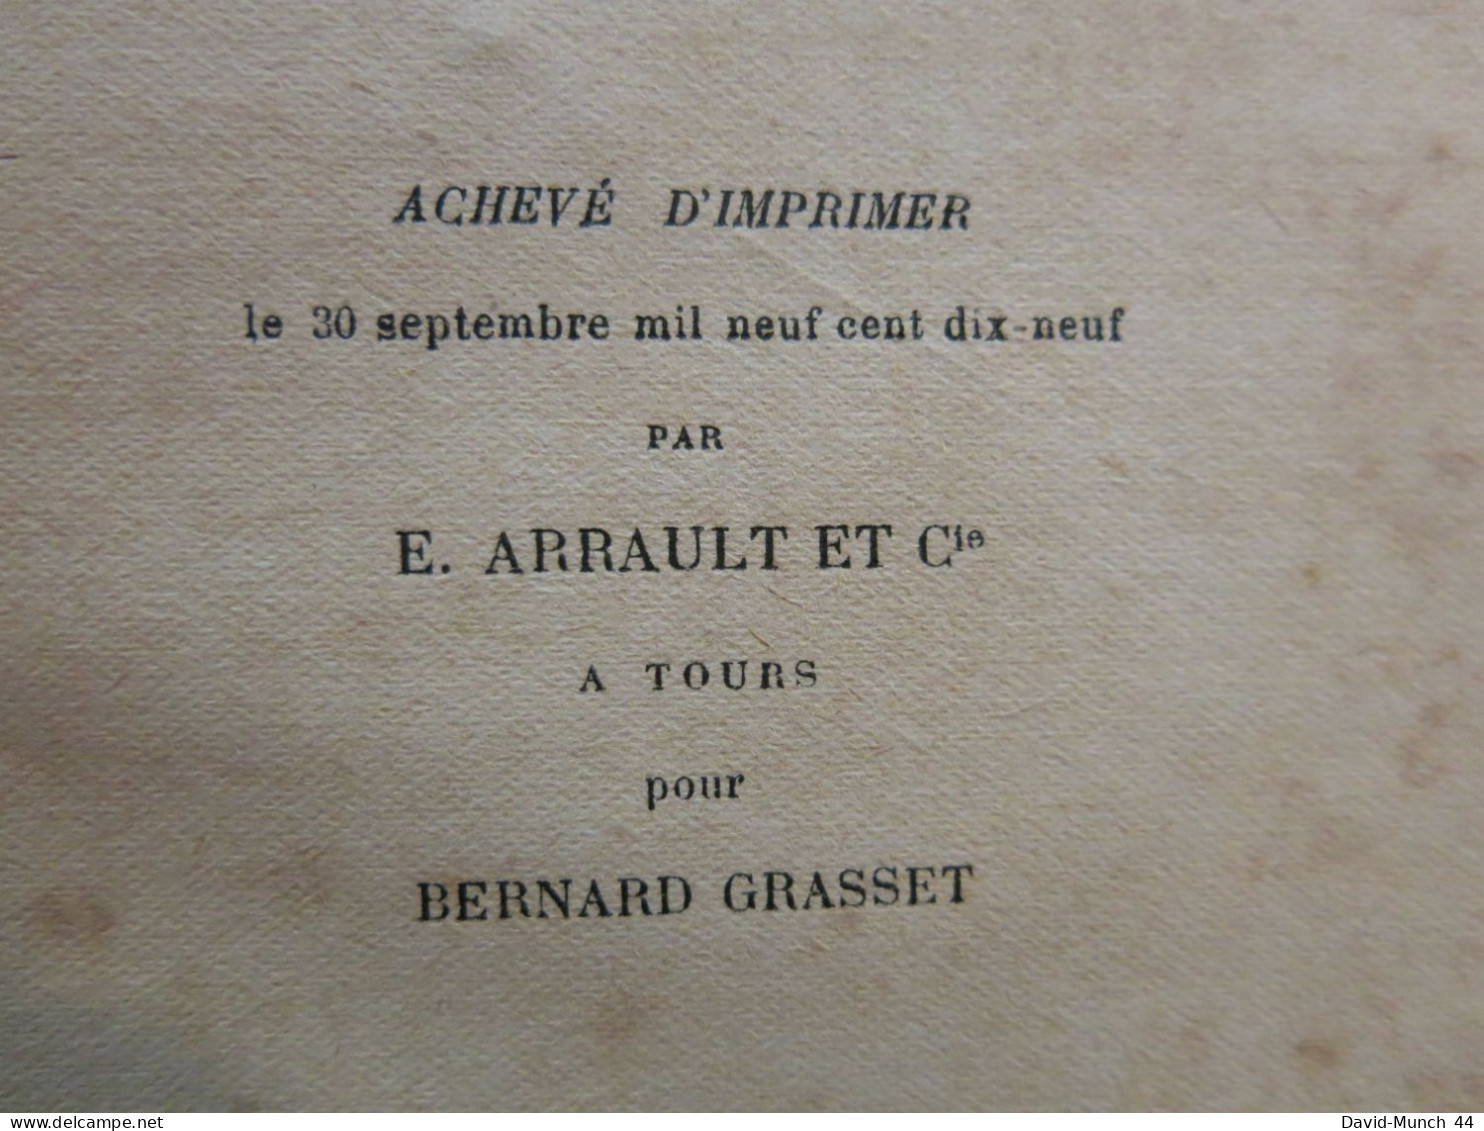 Dansons la trompeuse de Raymond Escholier. Paris, Bernard Grasset, éditeur. 1921